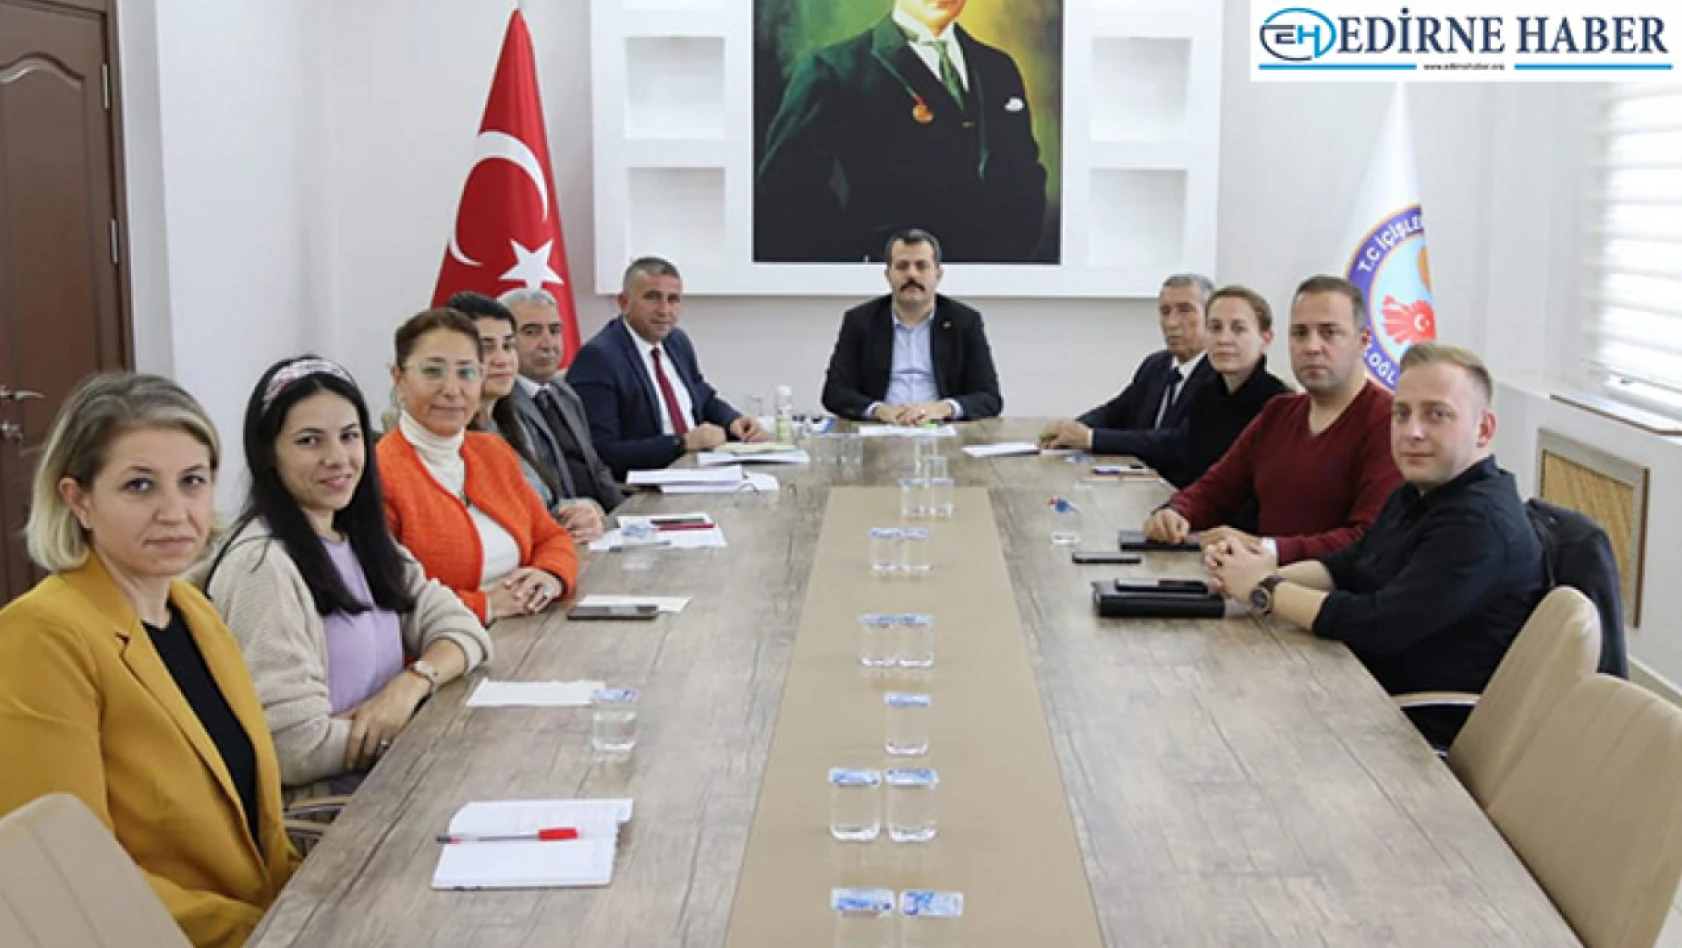 Süloğlu'ndaki eğitim çalışmalarının değerlendirildiği toplantı gerçekleştirildi